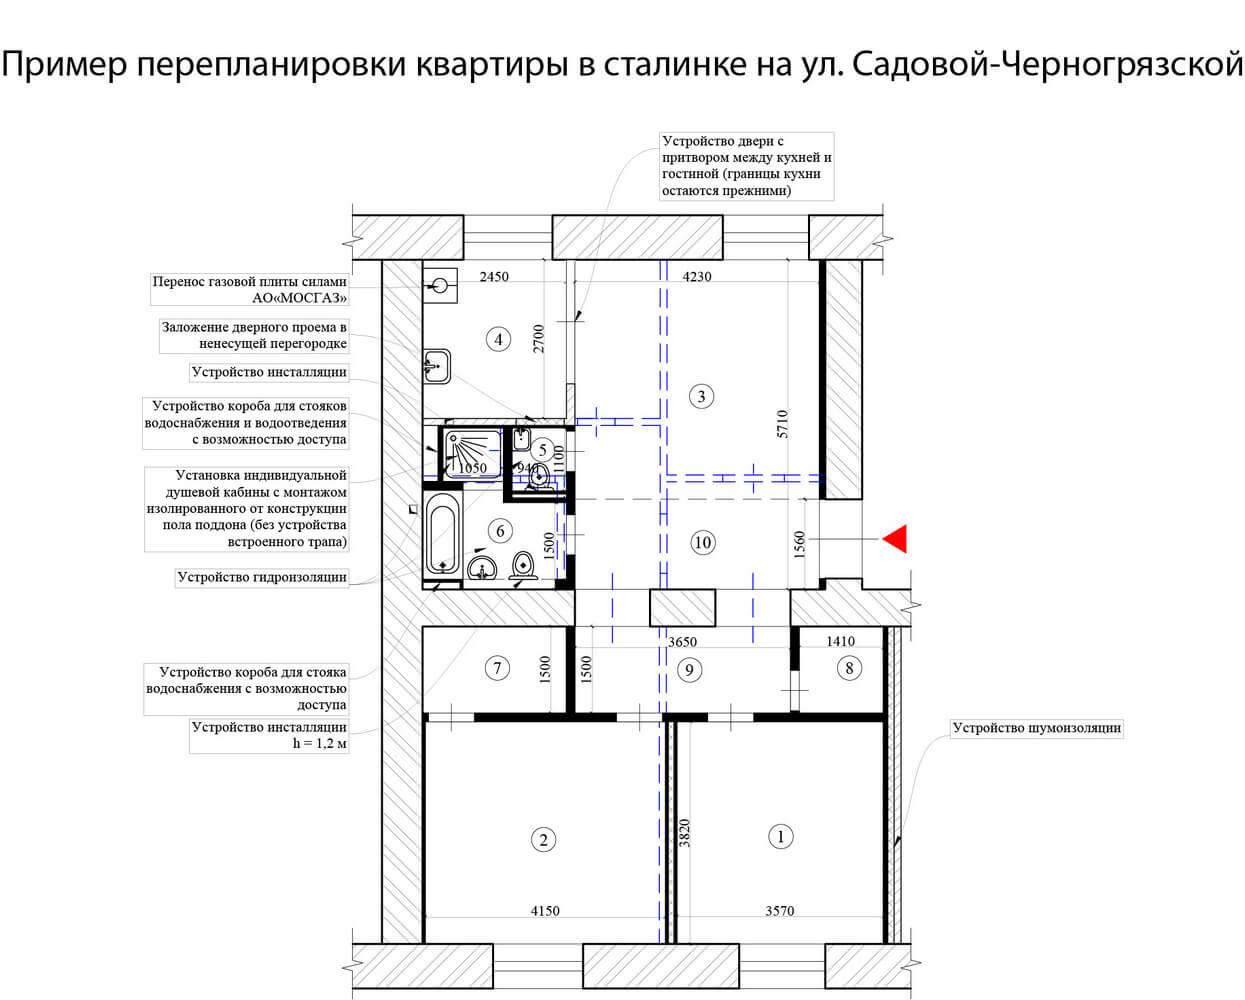 Пример перепланировки квартиры в сталинке